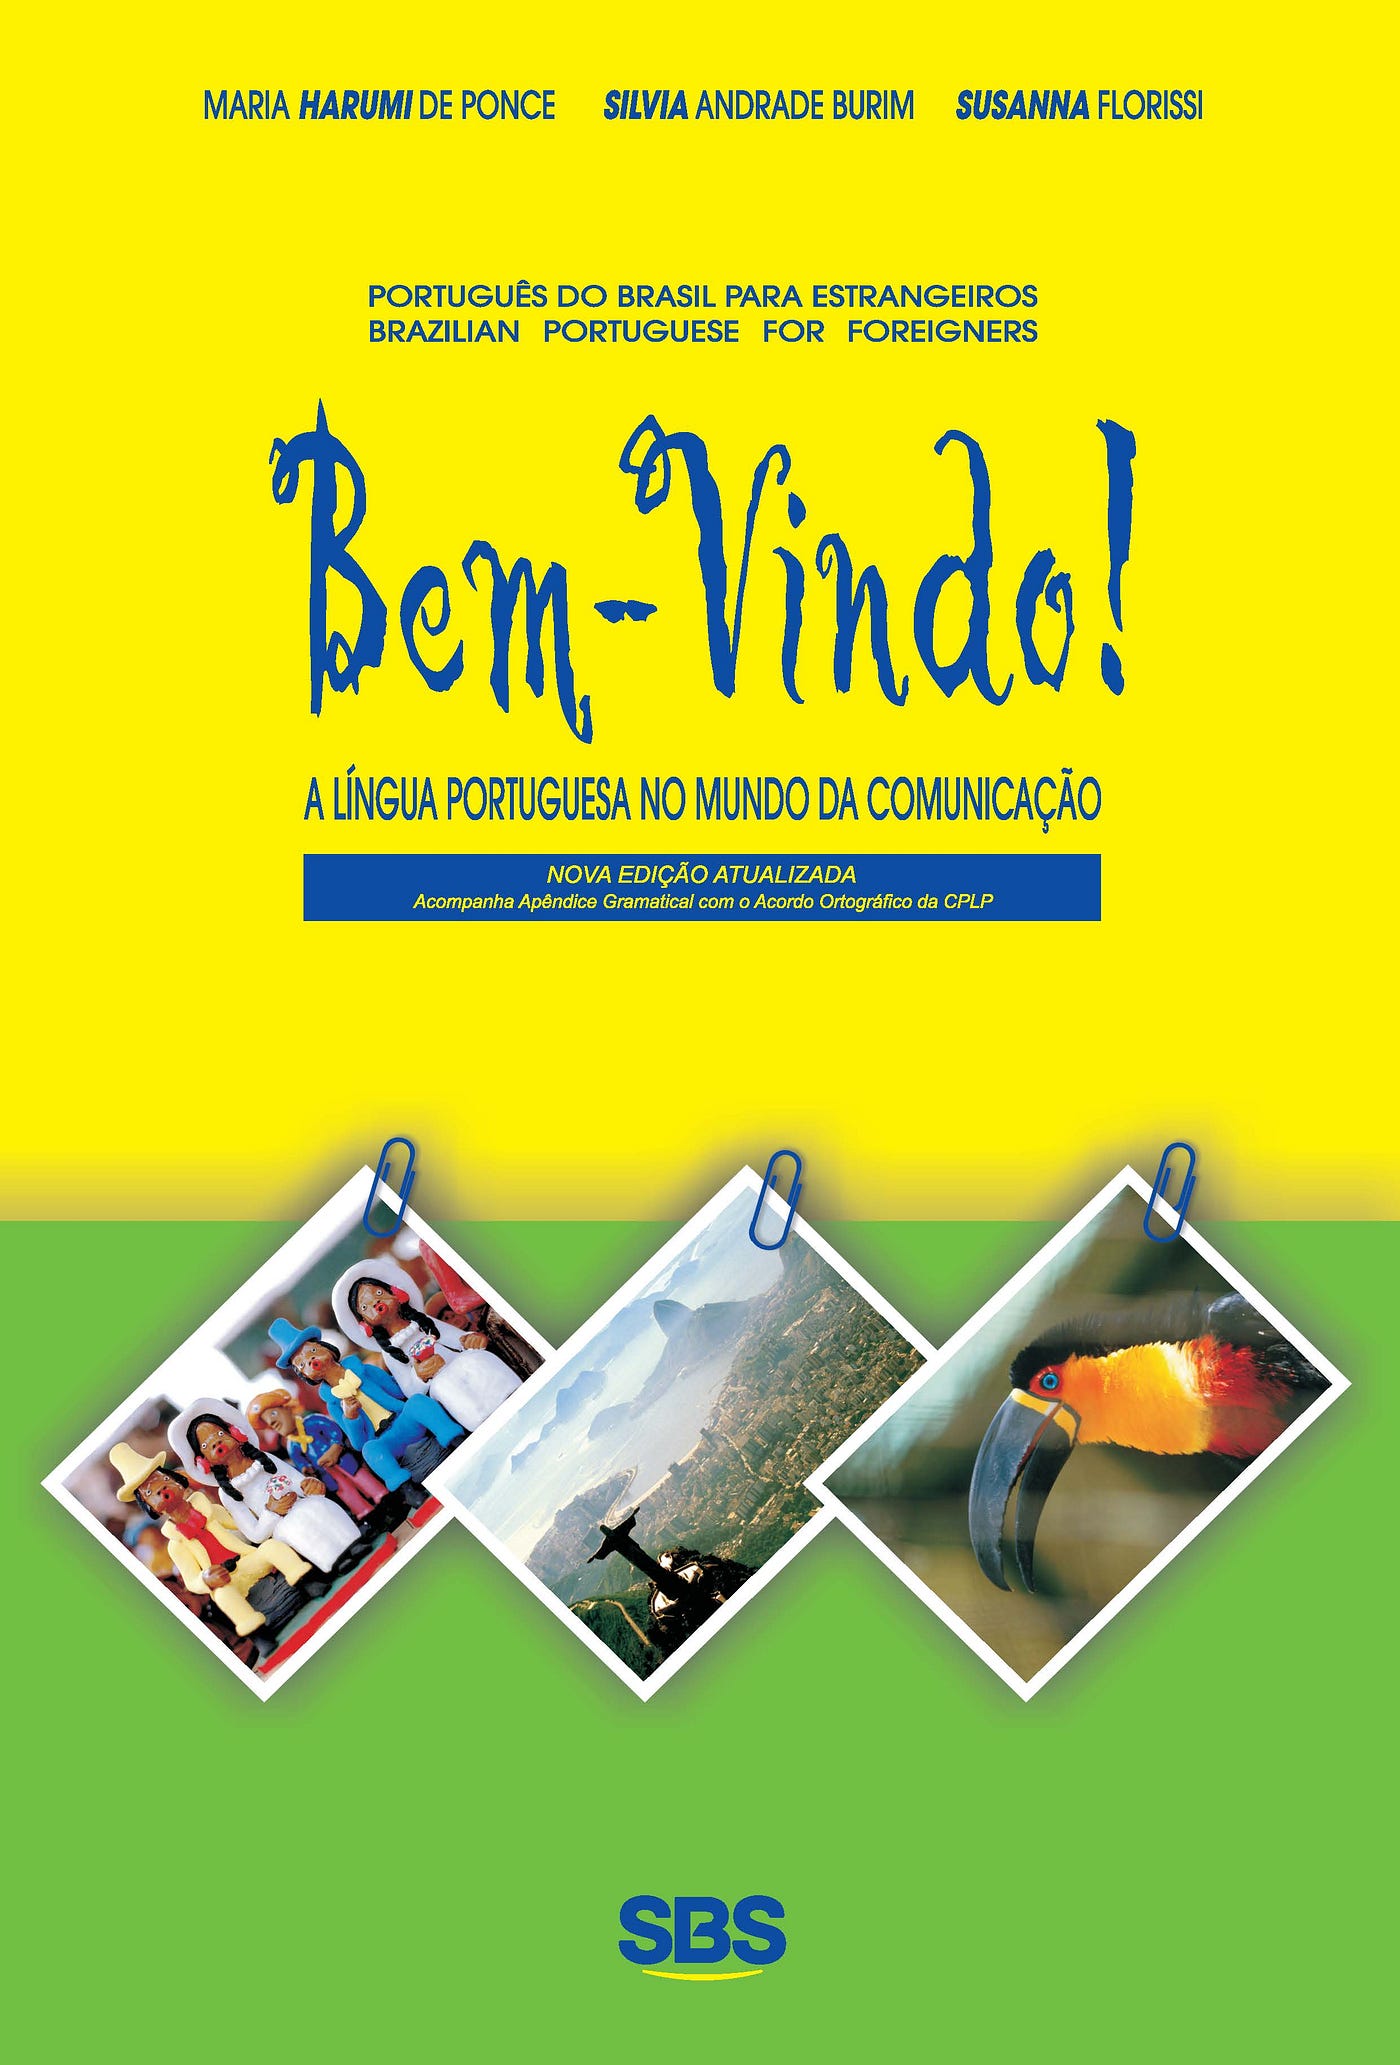 Português para estrangeiros gramática básica para alunos que já